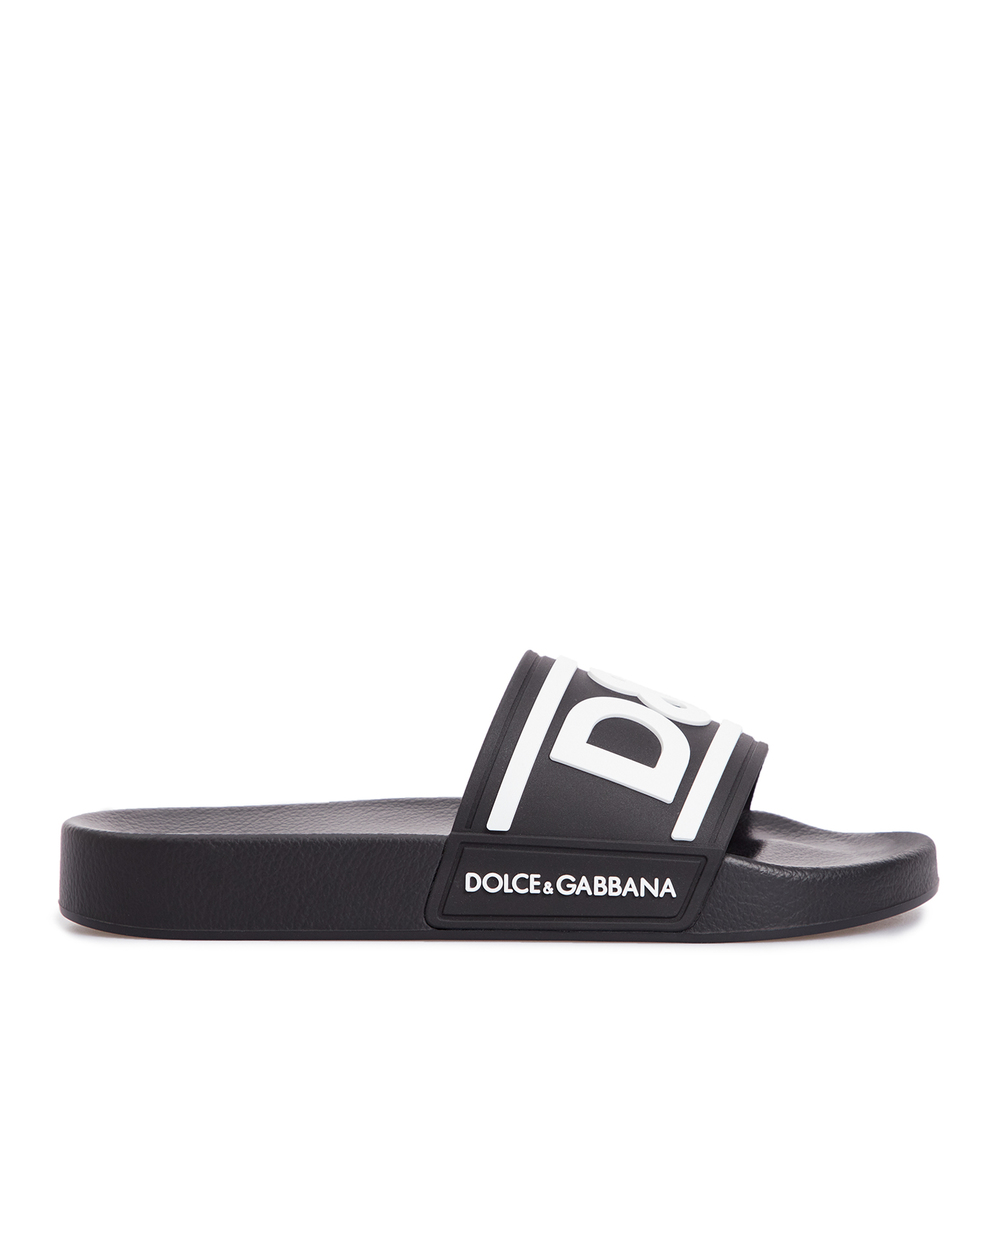 Слайдеры Dolce&Gabbana CW2072-AQ858, черный цвет • Купить в интернет-магазине Kameron